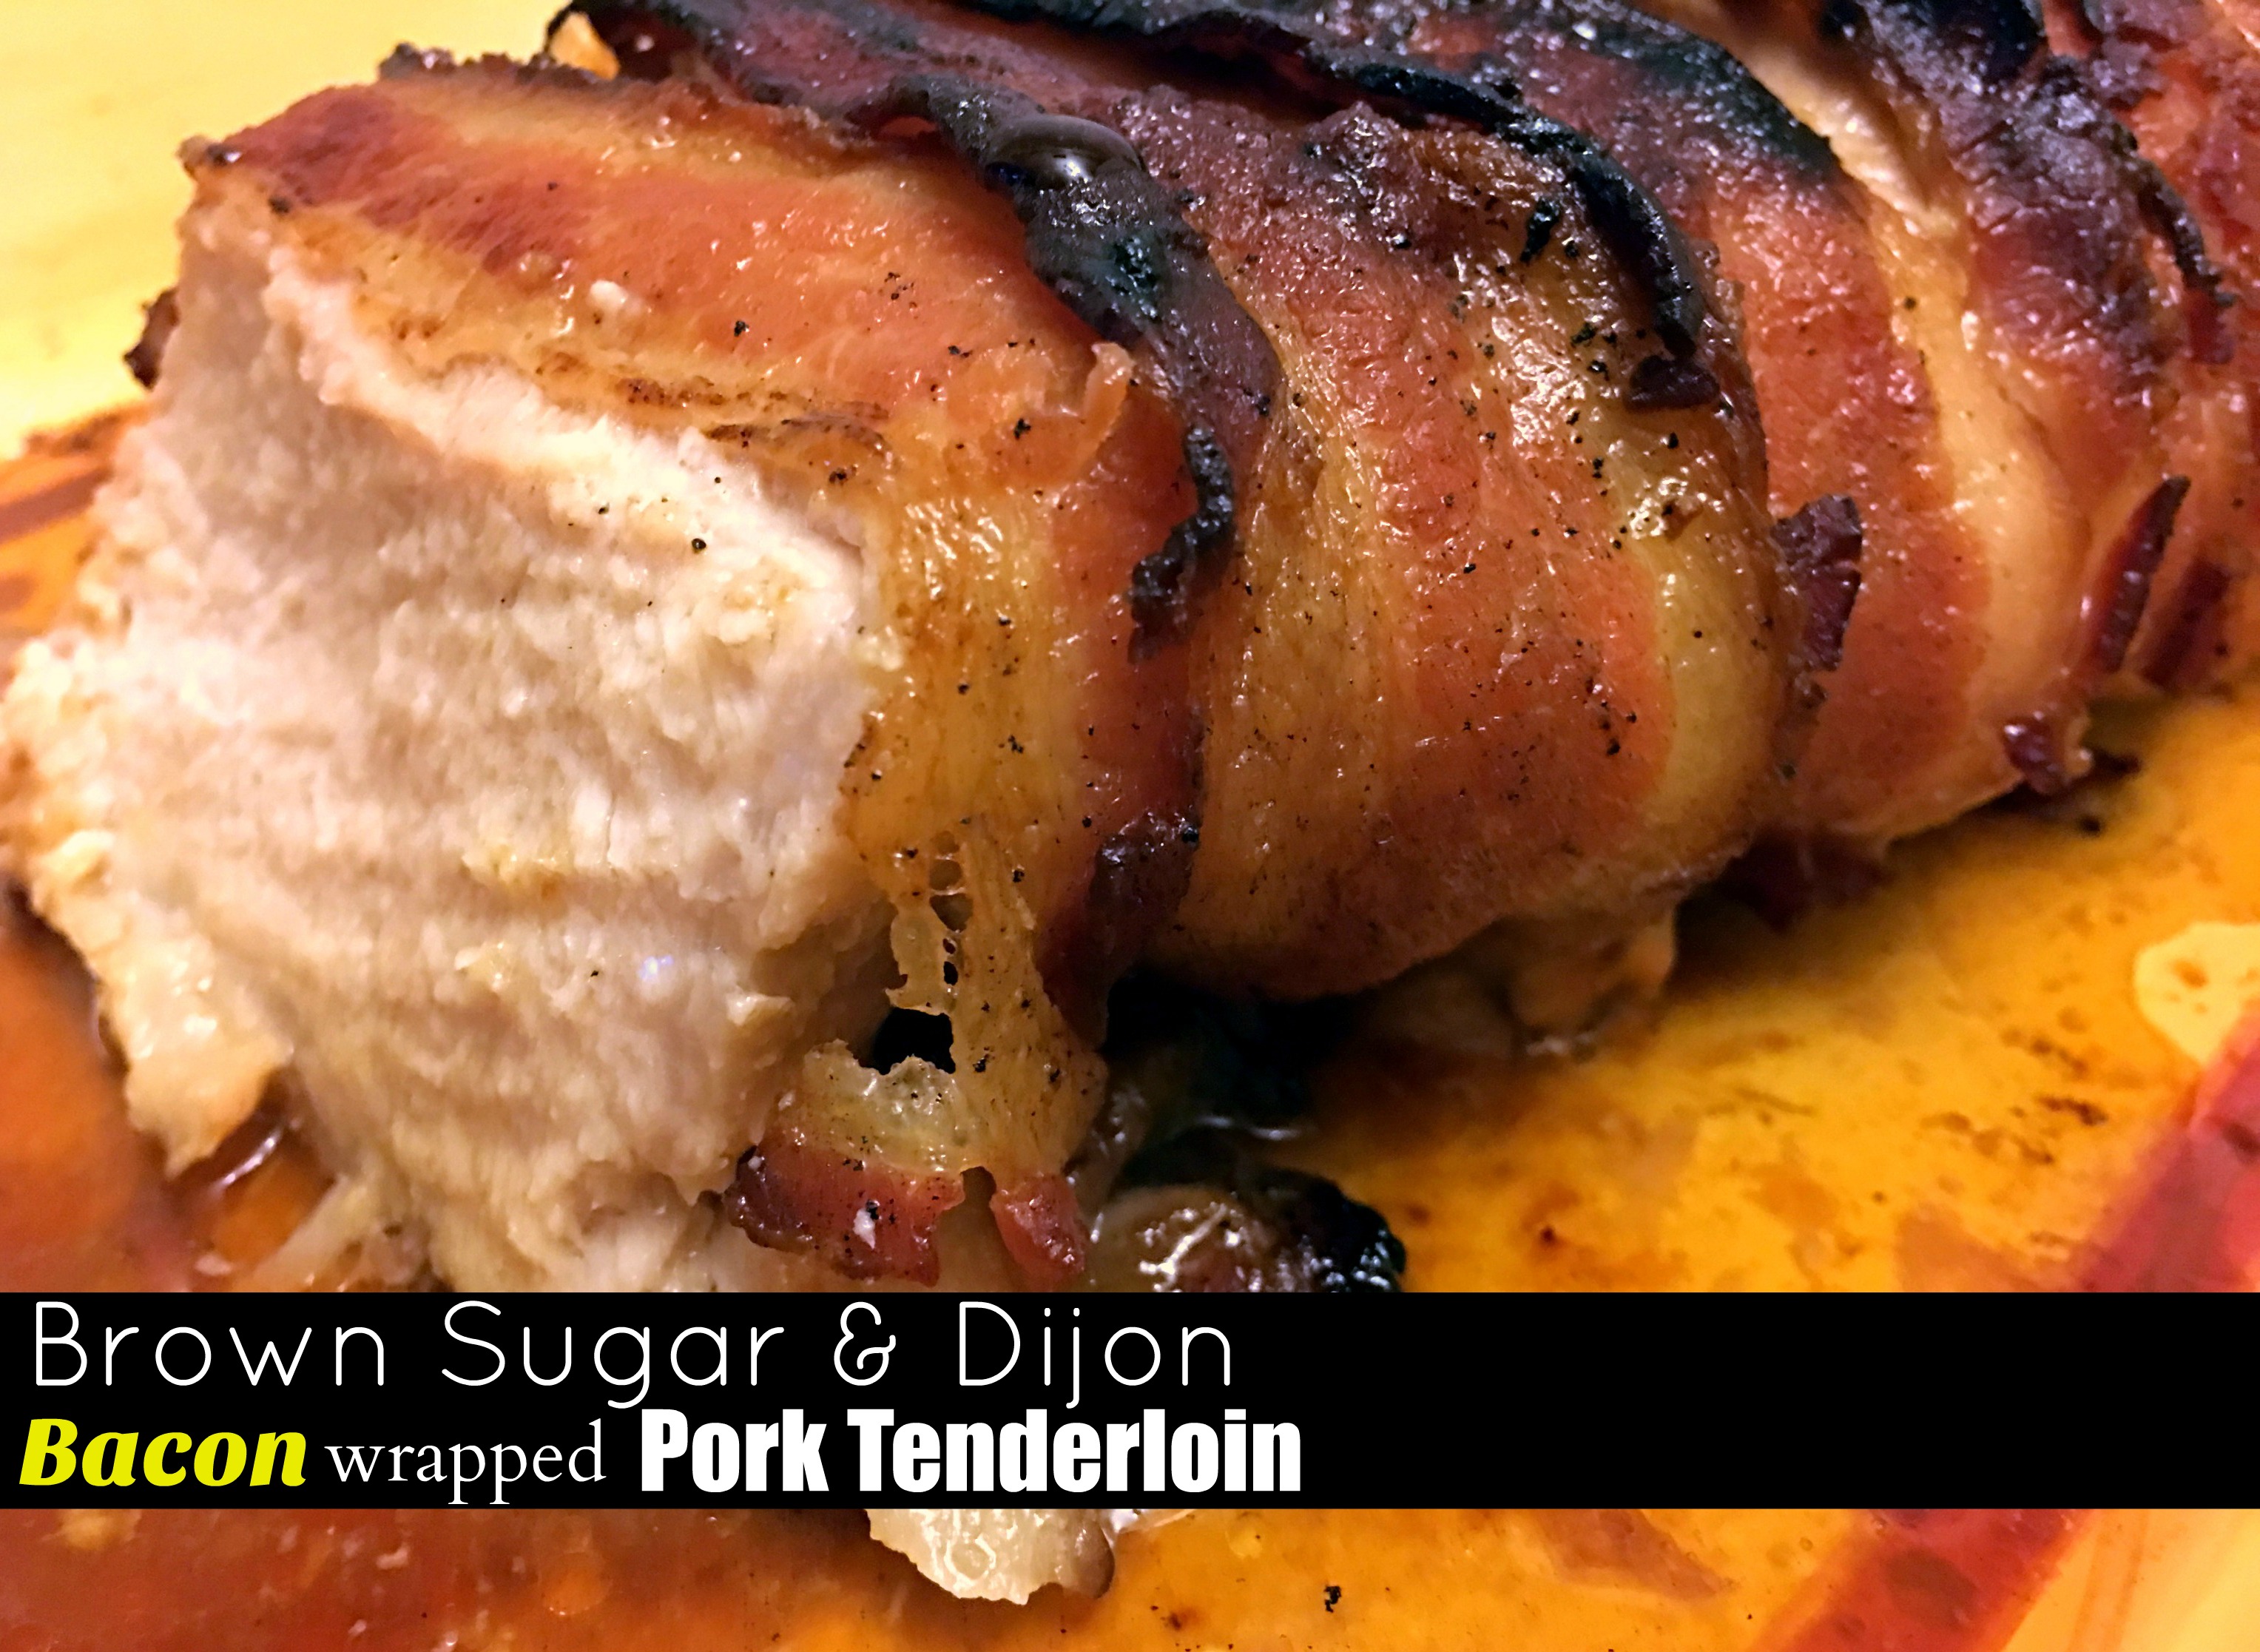 Brown Sugar & Dijon Bacon Wrapped Pork Tenderloin